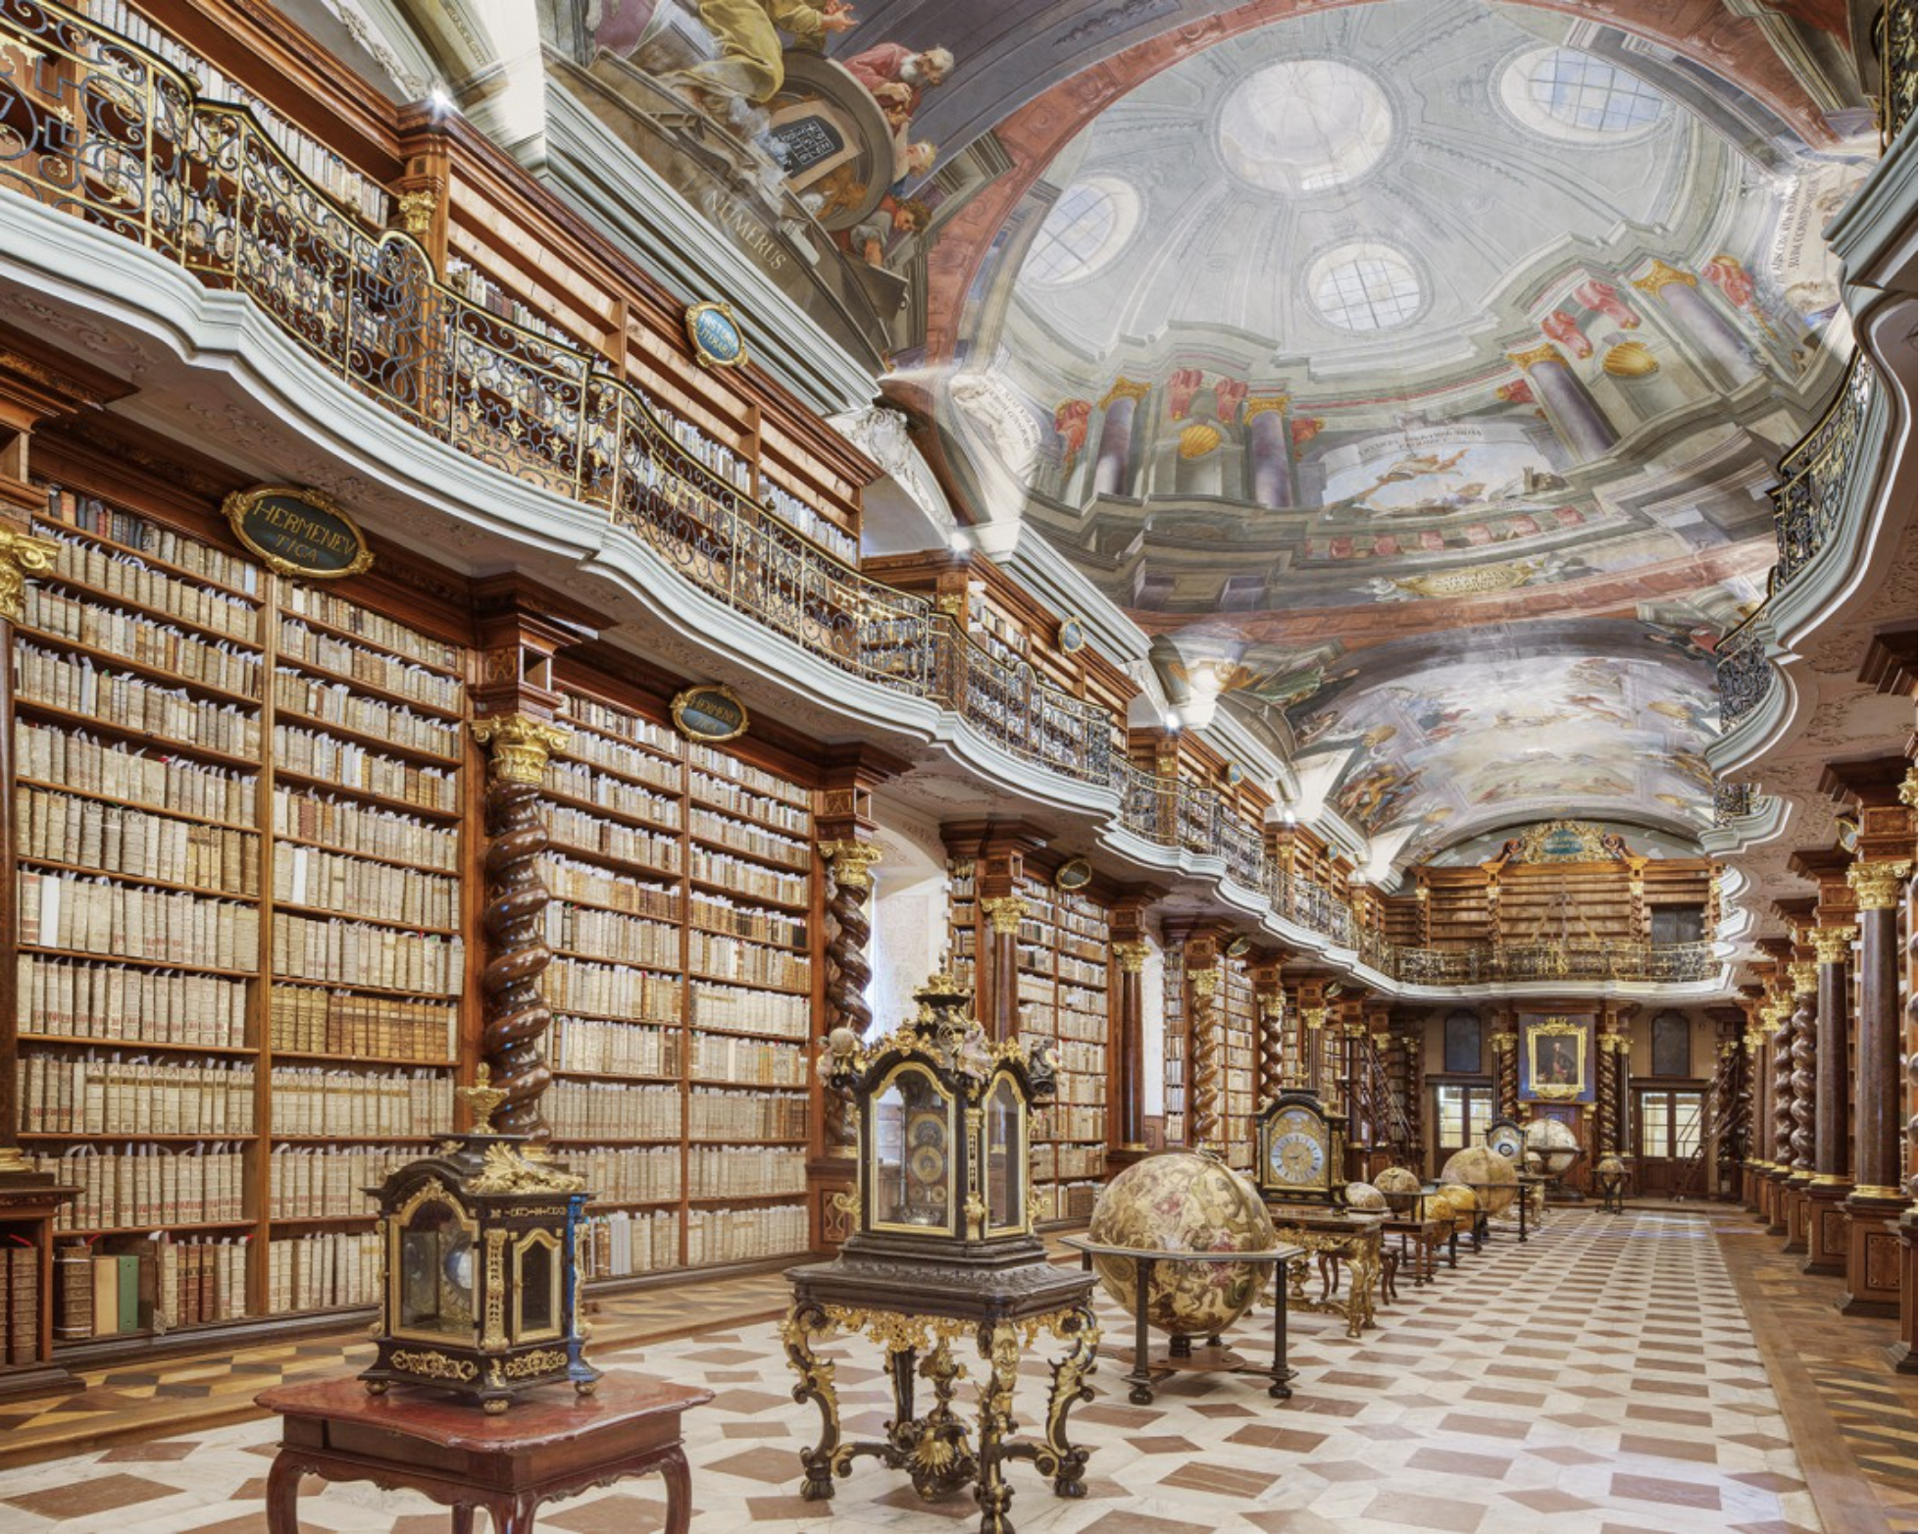 Books, Clocks and Globes I, Czech National Library, Prague, Czech Republic by Reinhard Gorner